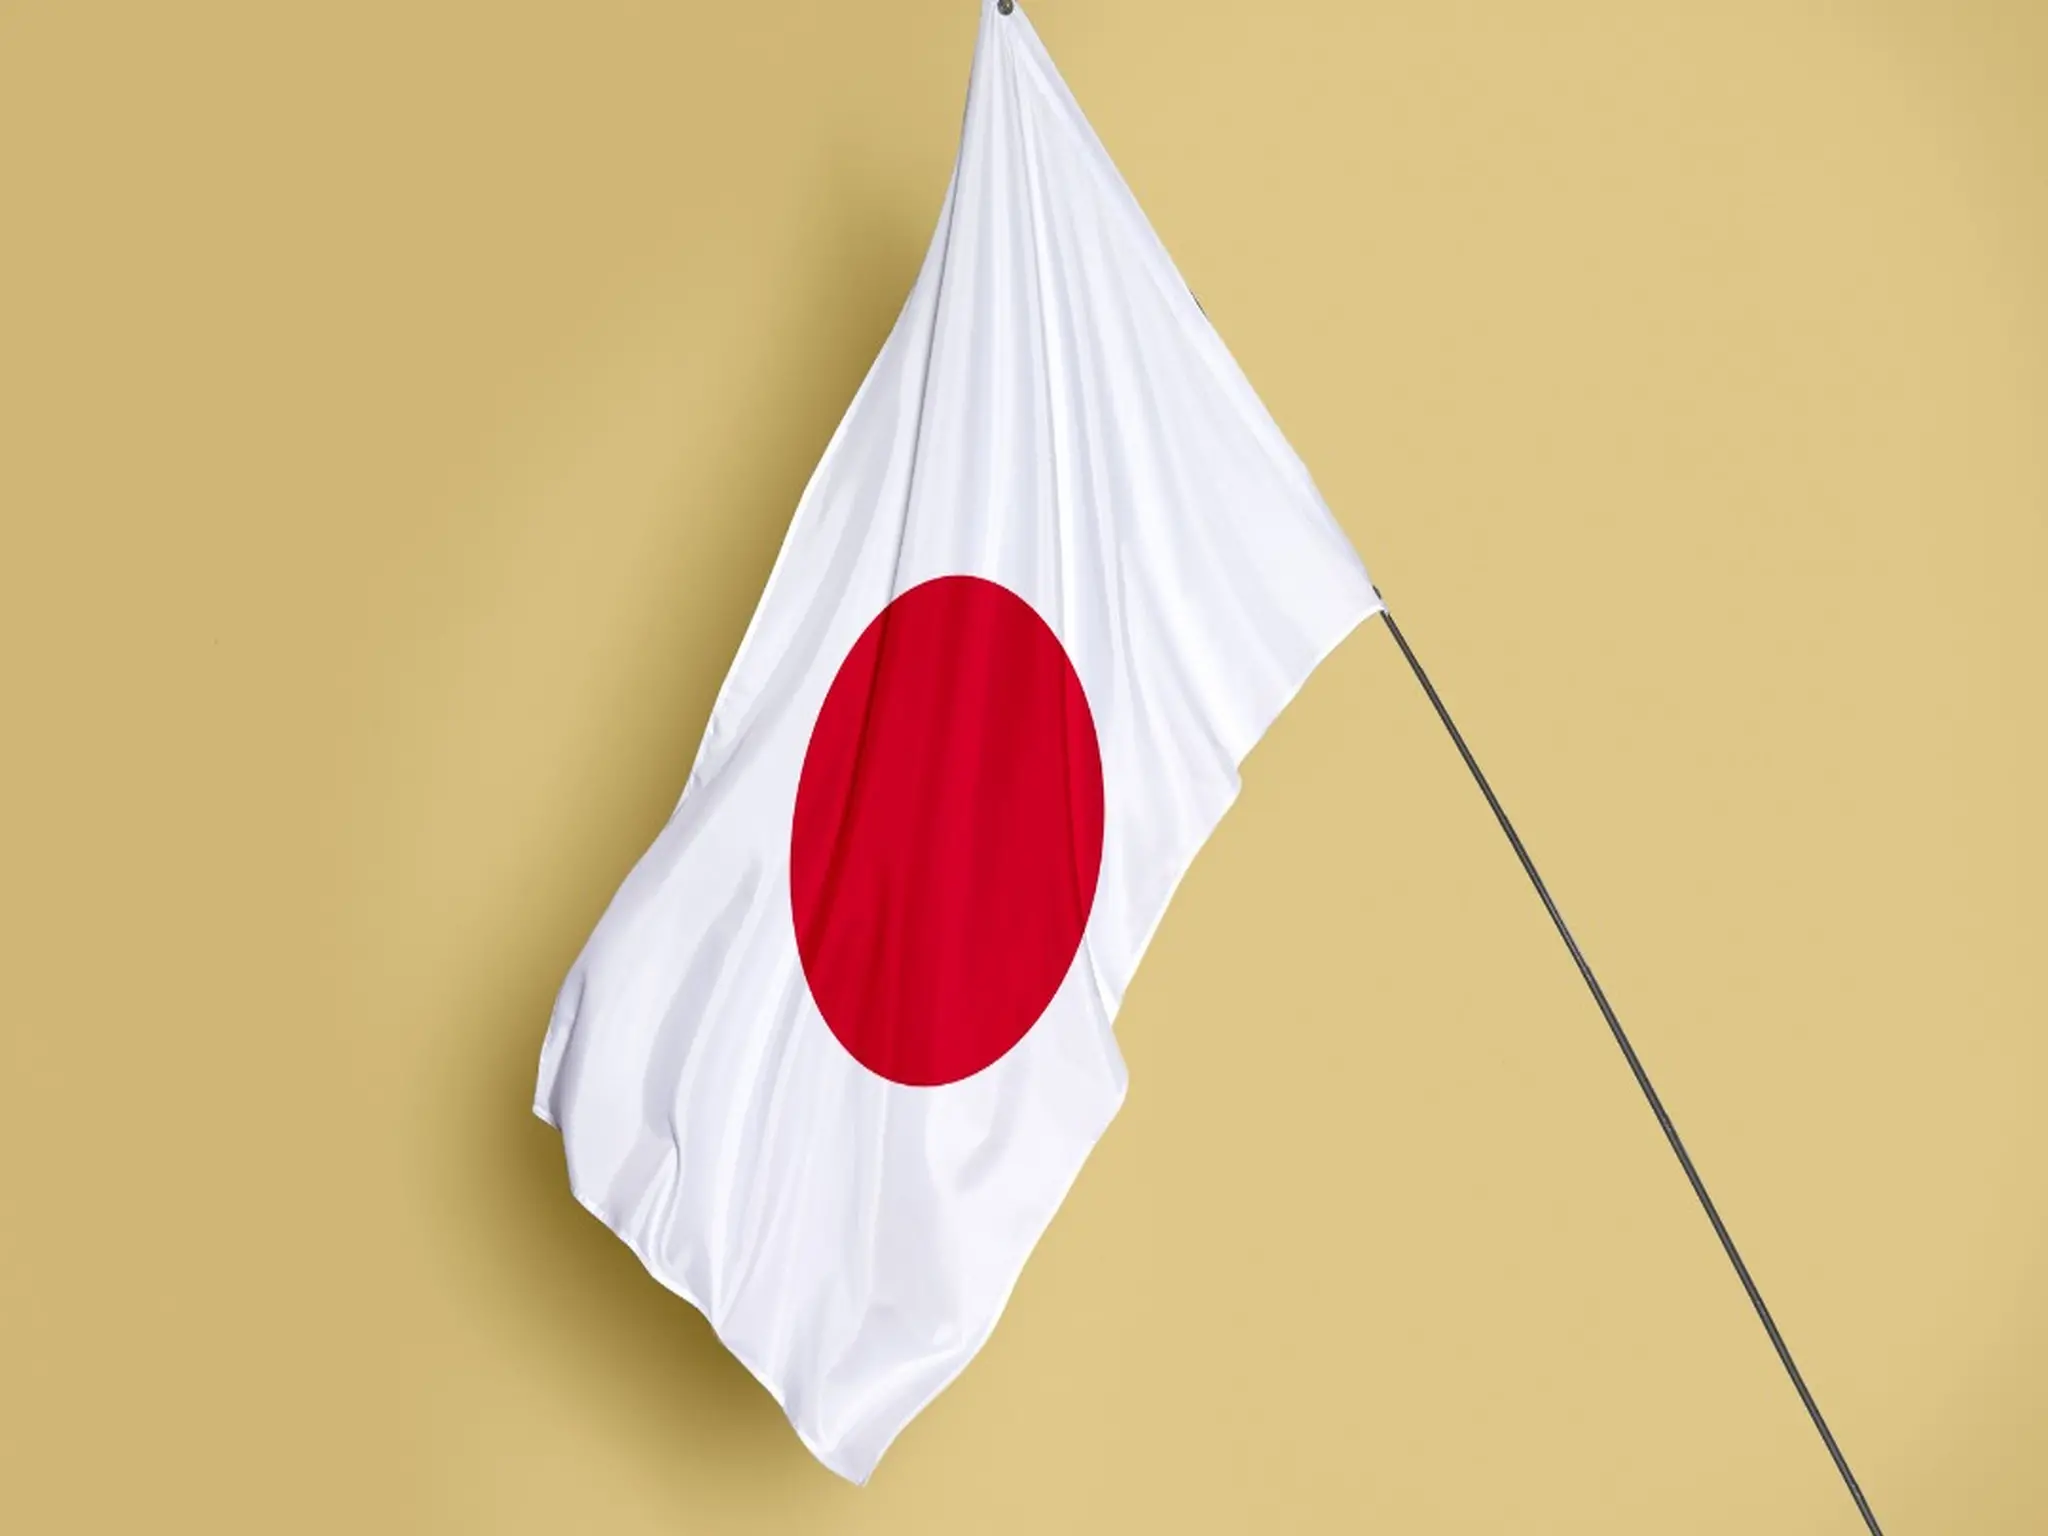 اليابان تحدد مدة اصدار التأشيرة اليابانية إلكترونيا والمستندات المطلوبة